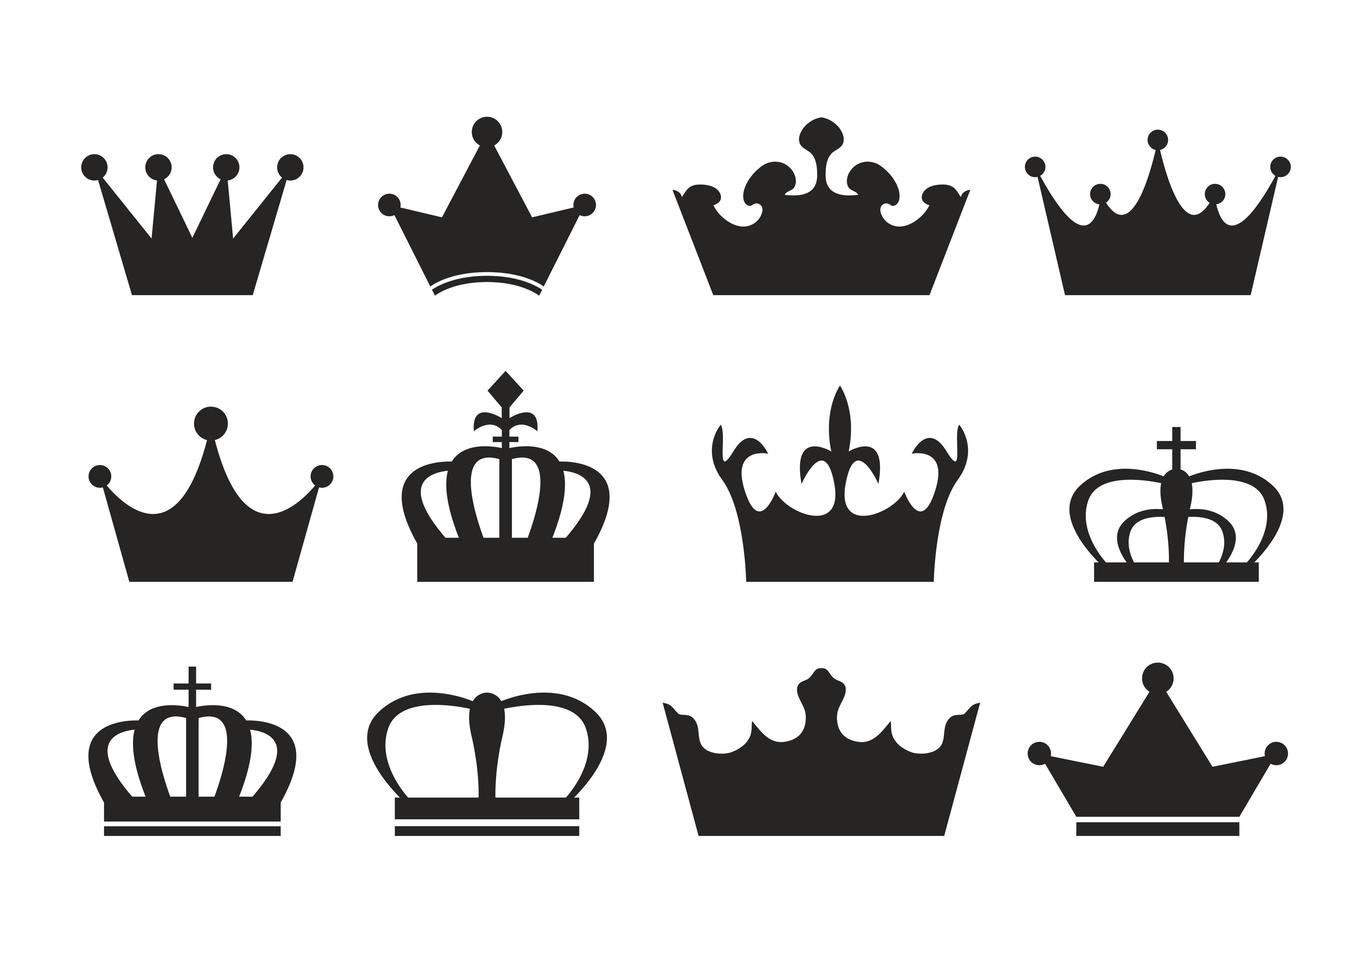 conjunto de silhueta da coroa real vetor